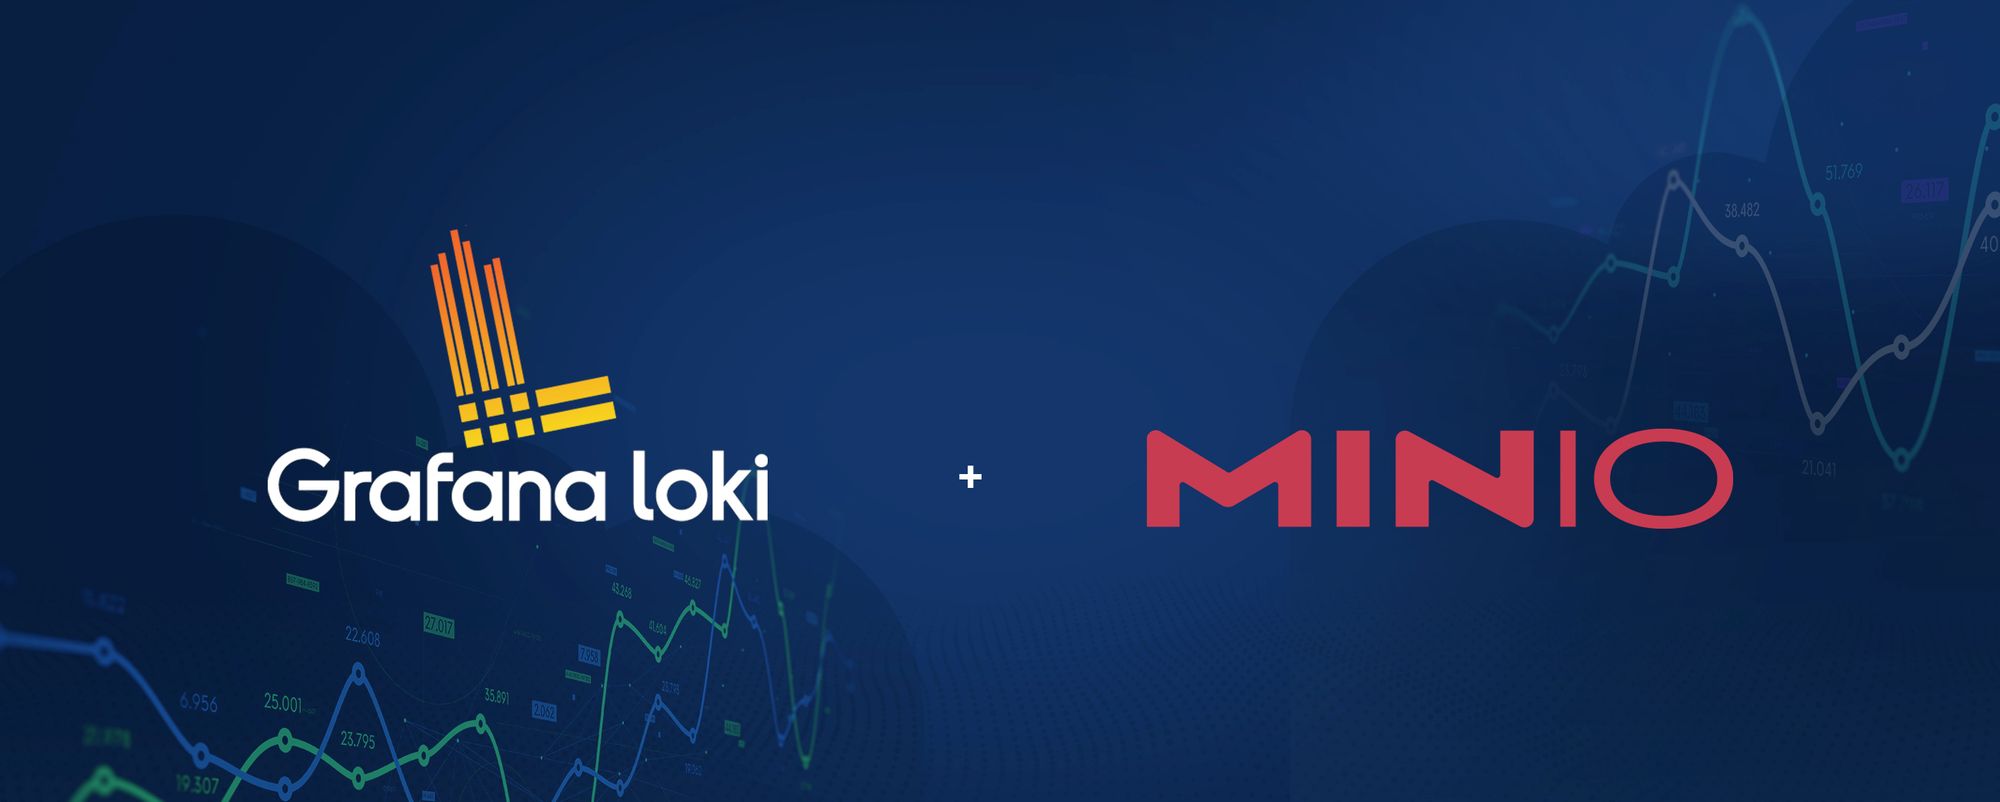 How To Deploy Grafana Loki and Save Data to MinIO